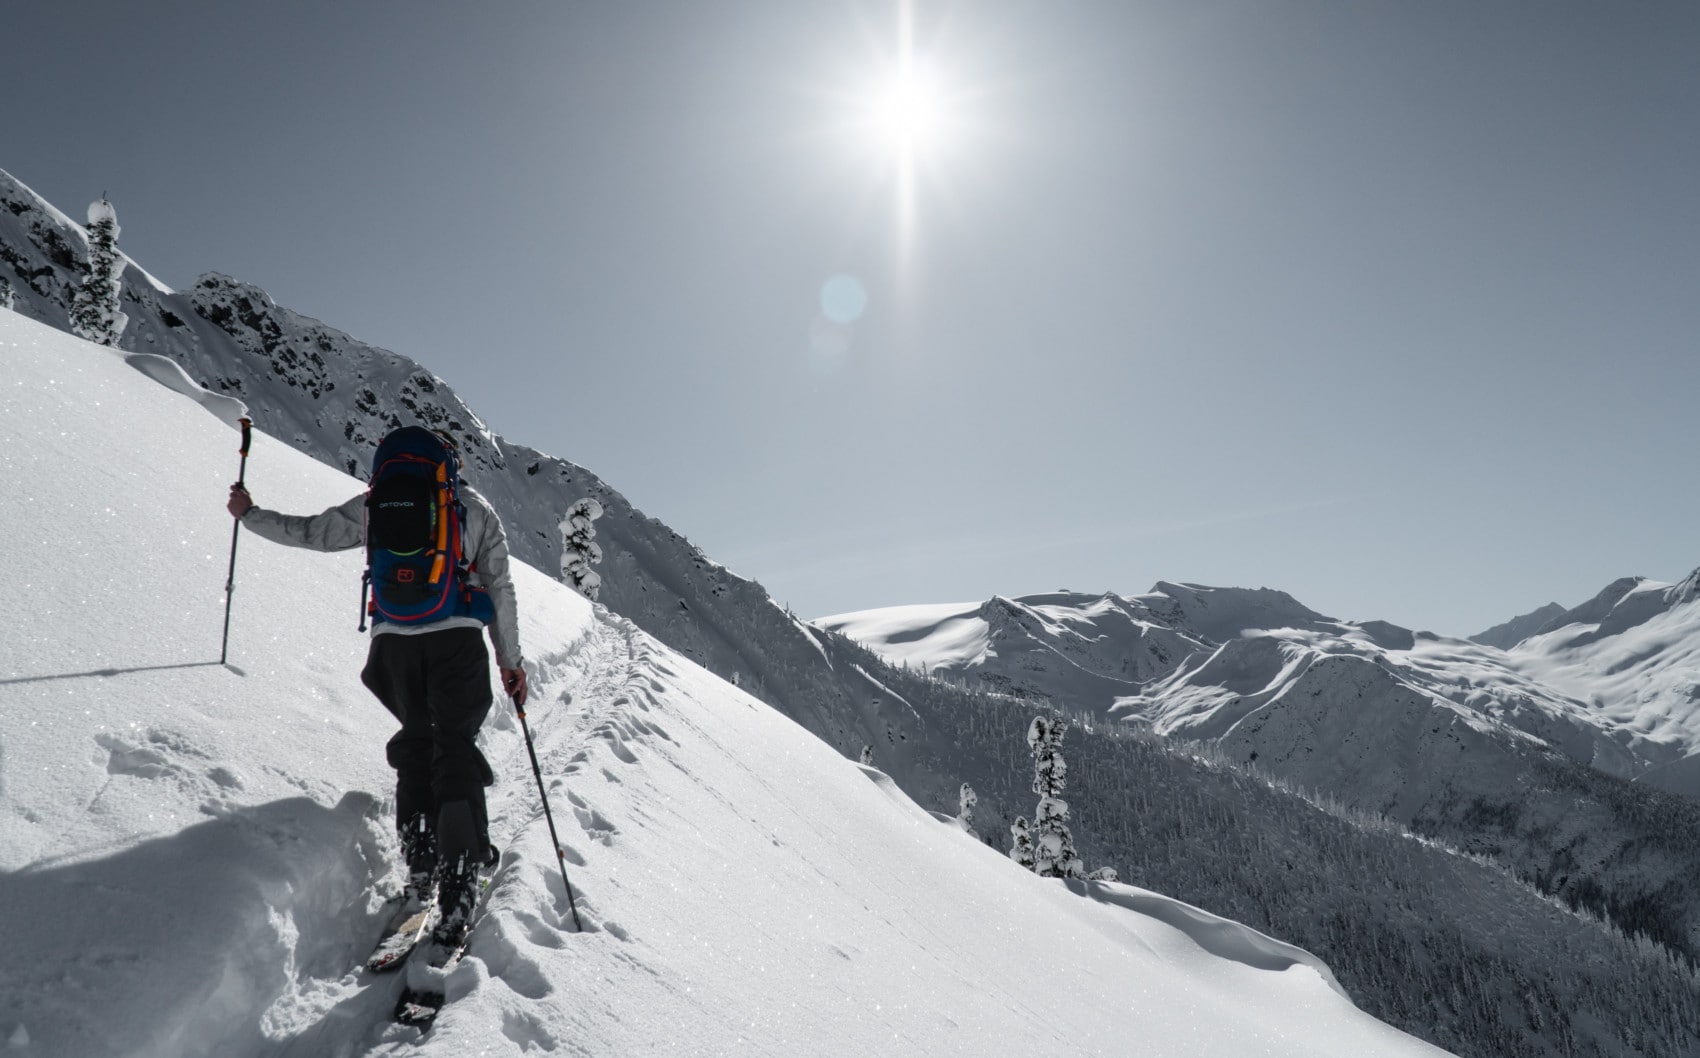 Getting started ski touring: On-piste ski touring